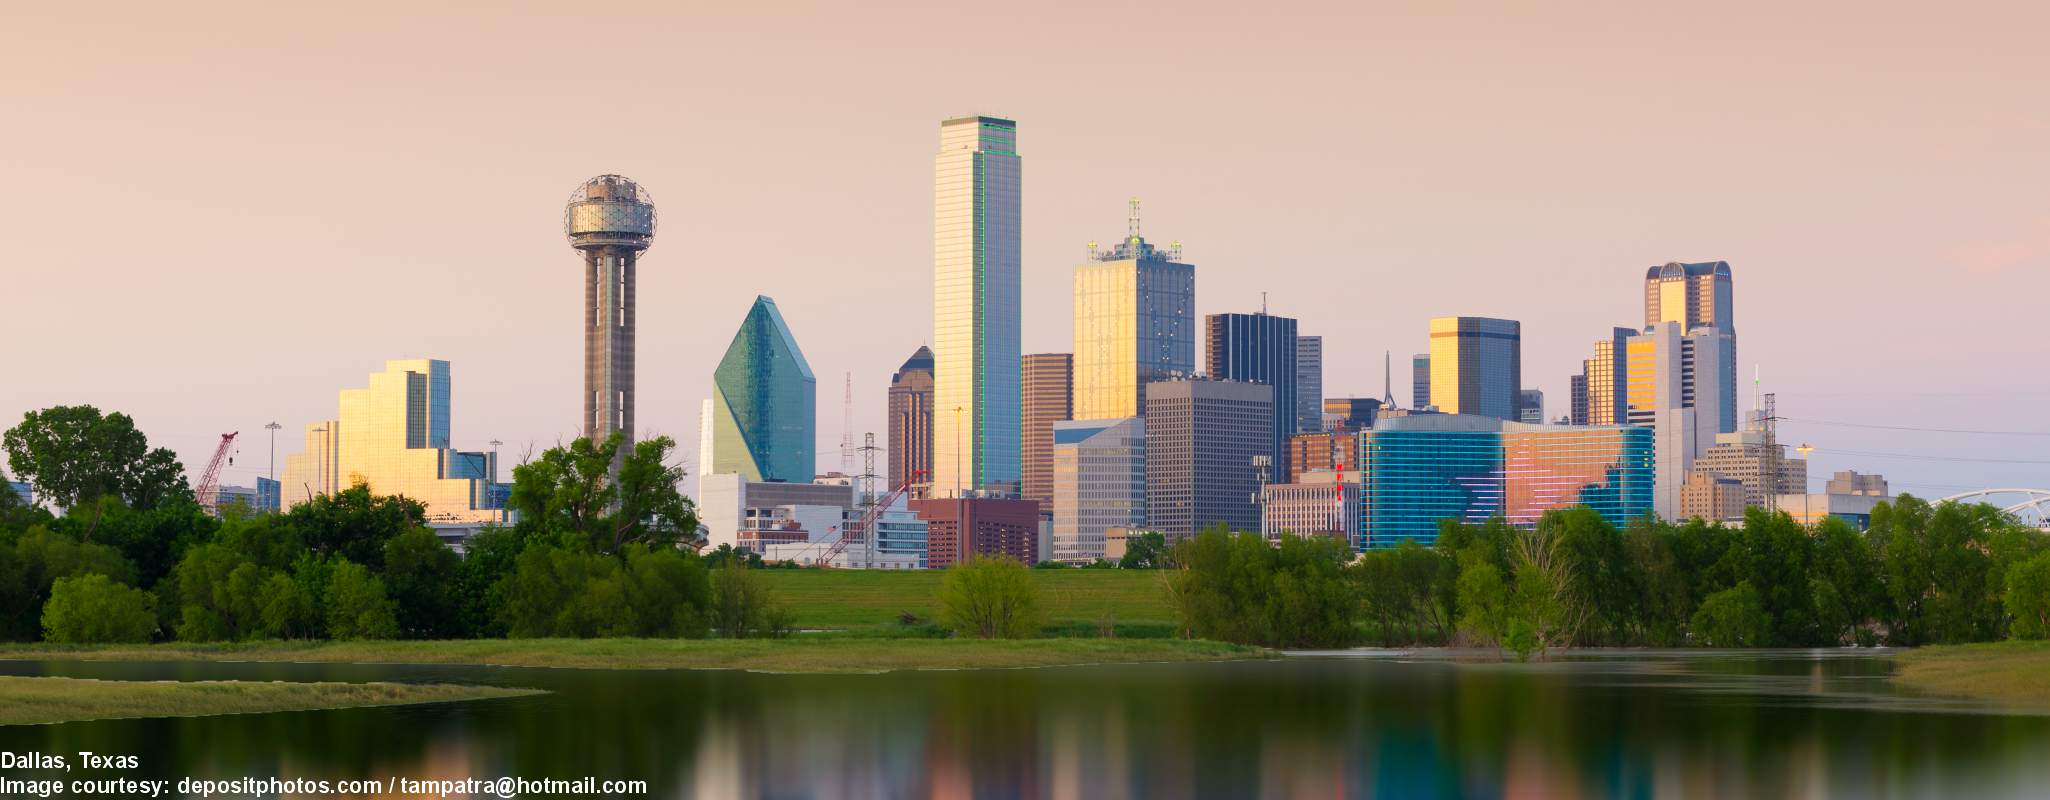 Dallas image